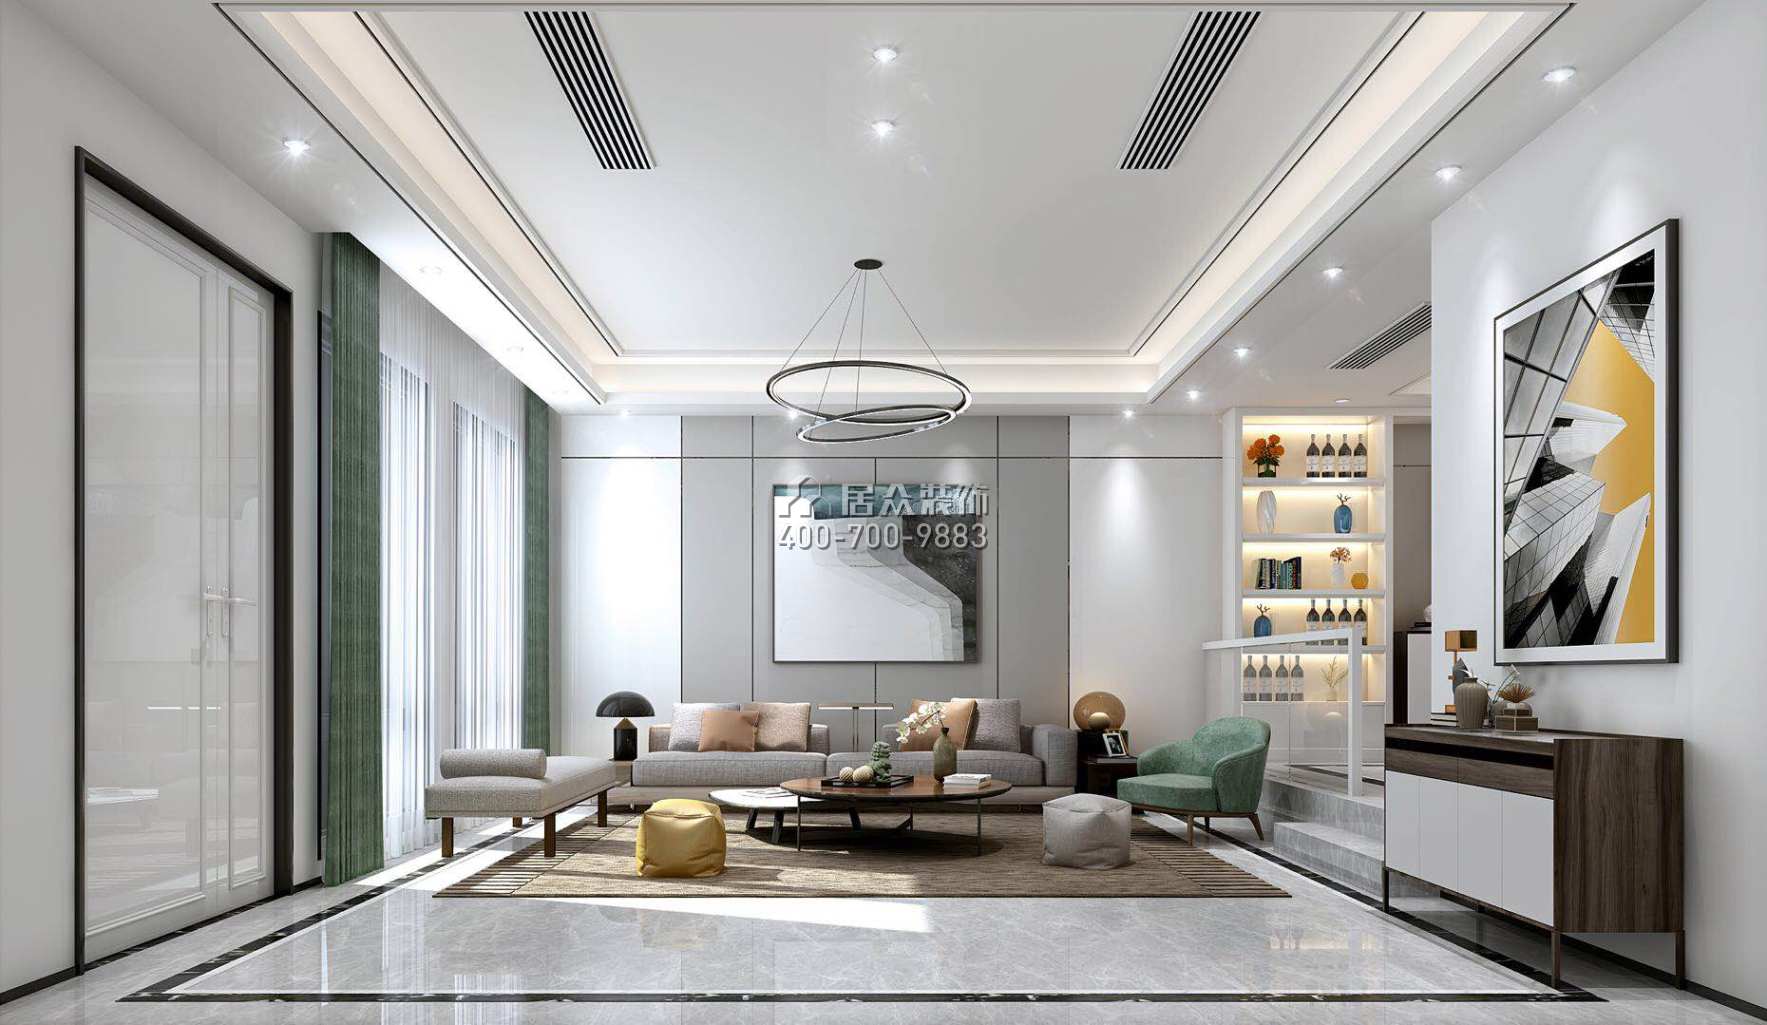 鲁能领秀城350平方米现代简约风格别墅户型客厅装修效果图